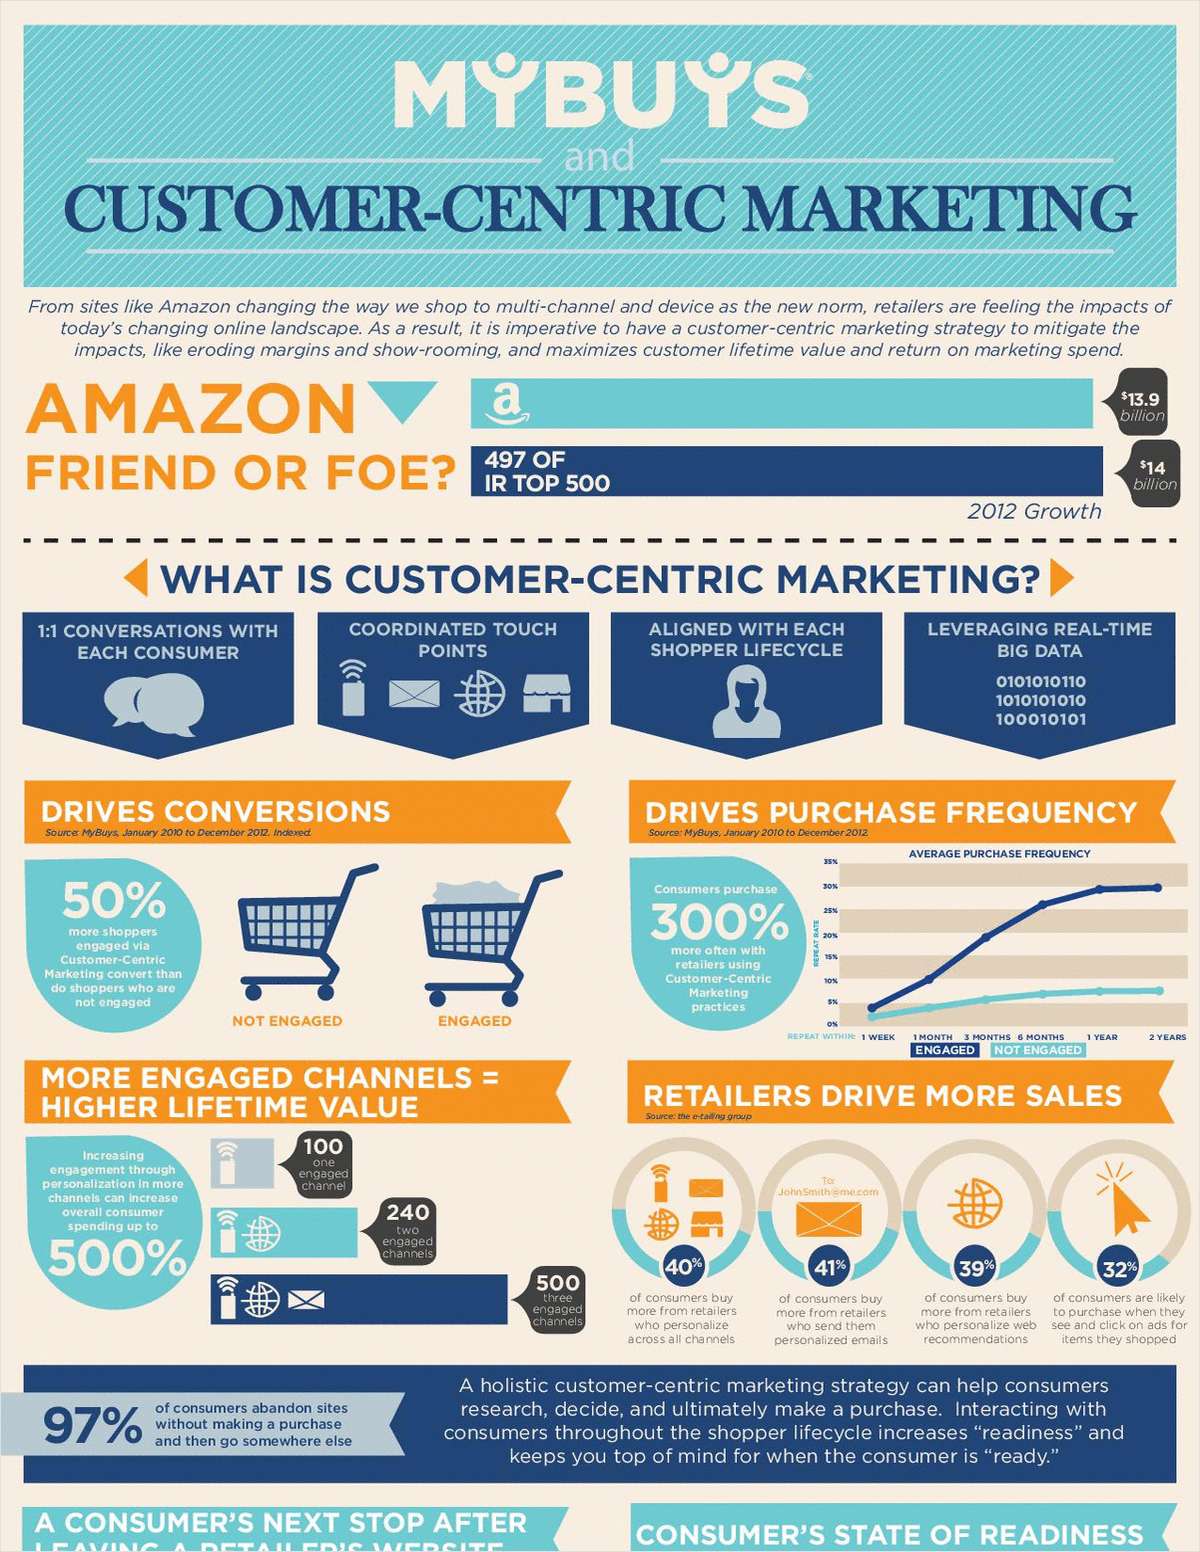 Customer-Centric Marketing at a Glance